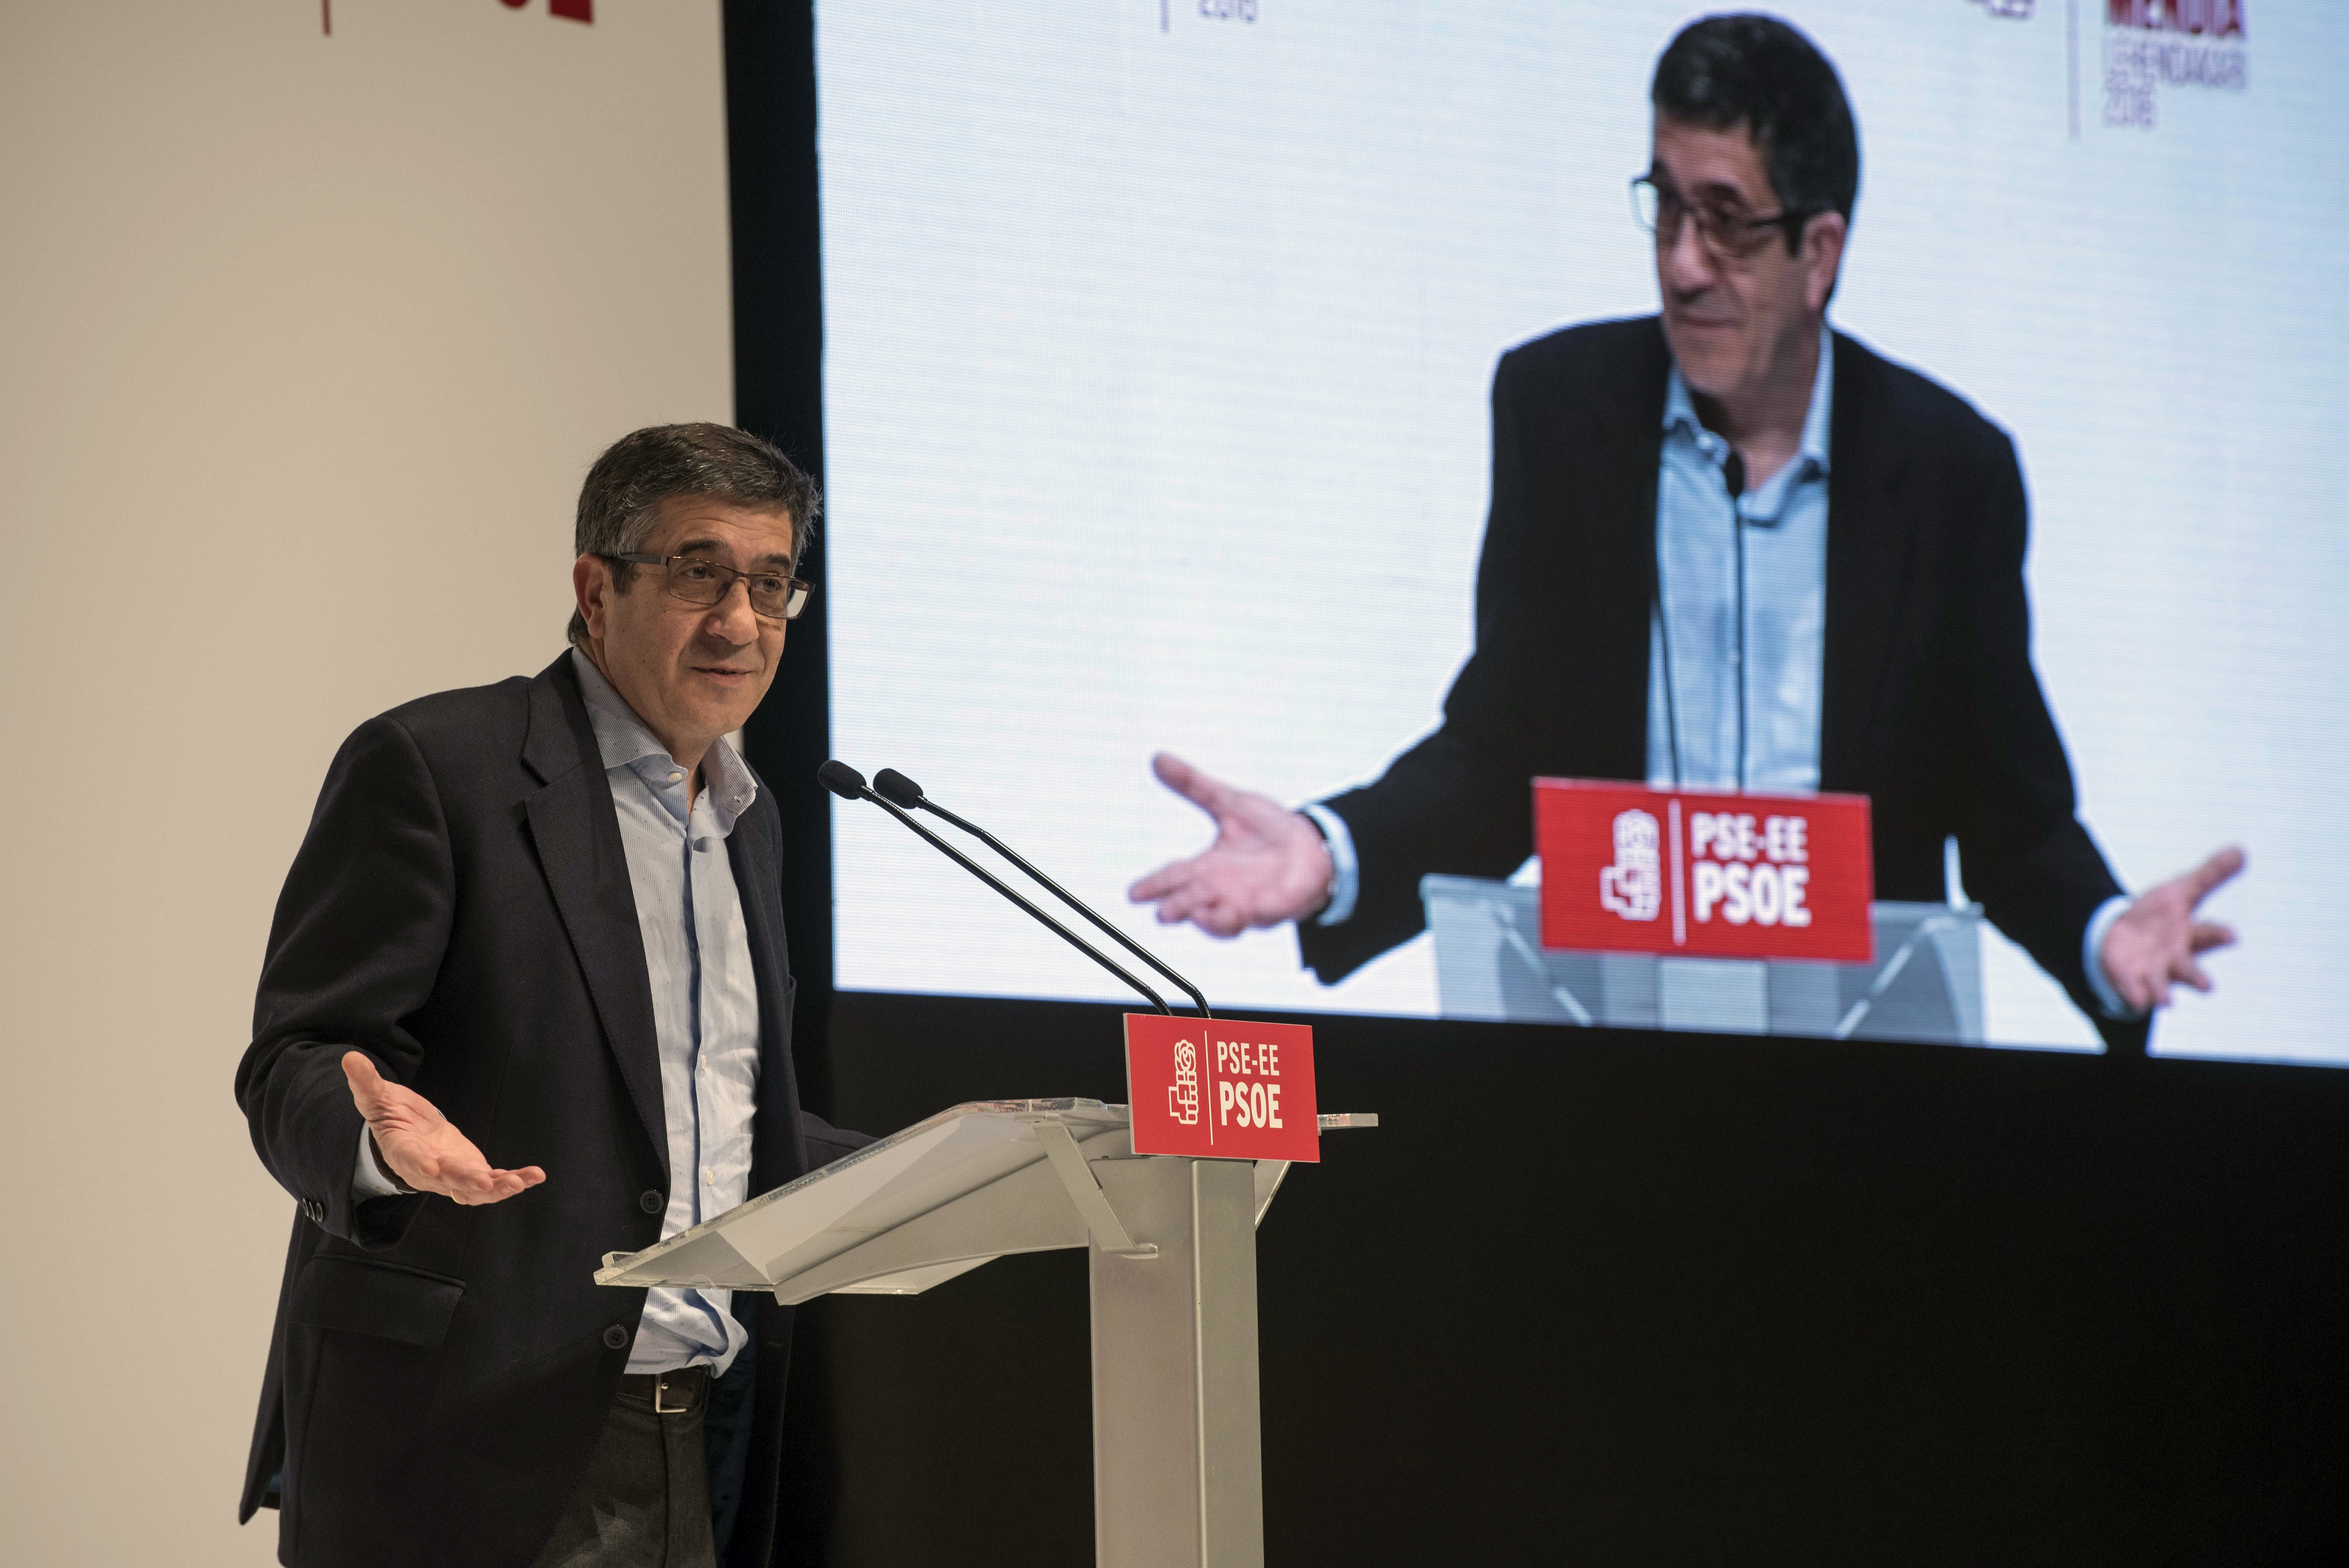 El presidente del Congreso de los Diputados, Patxi López, interviene en el acto de proclamación de la secretaria general de los socialistas vascos, Idoia Mendia, como candidata a lehendakari, hoy en Bilbao.